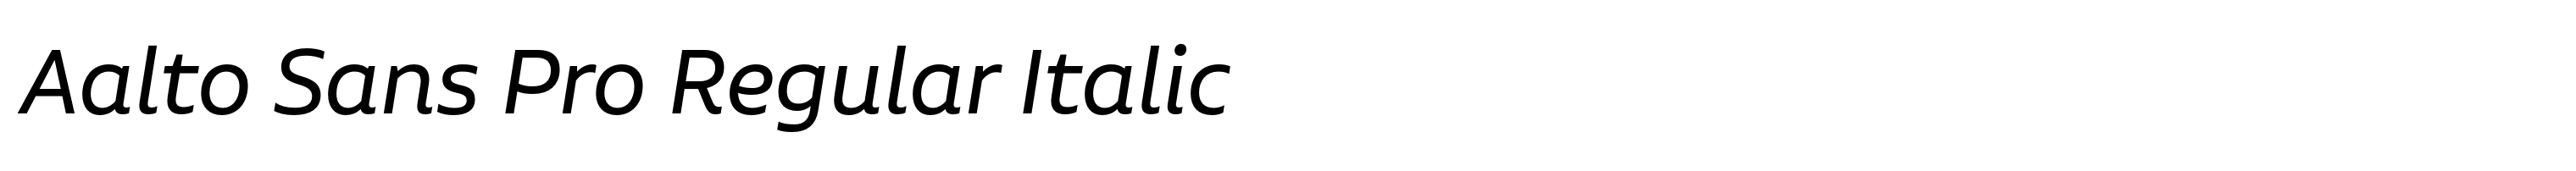 Aalto Sans Pro Regular Italic